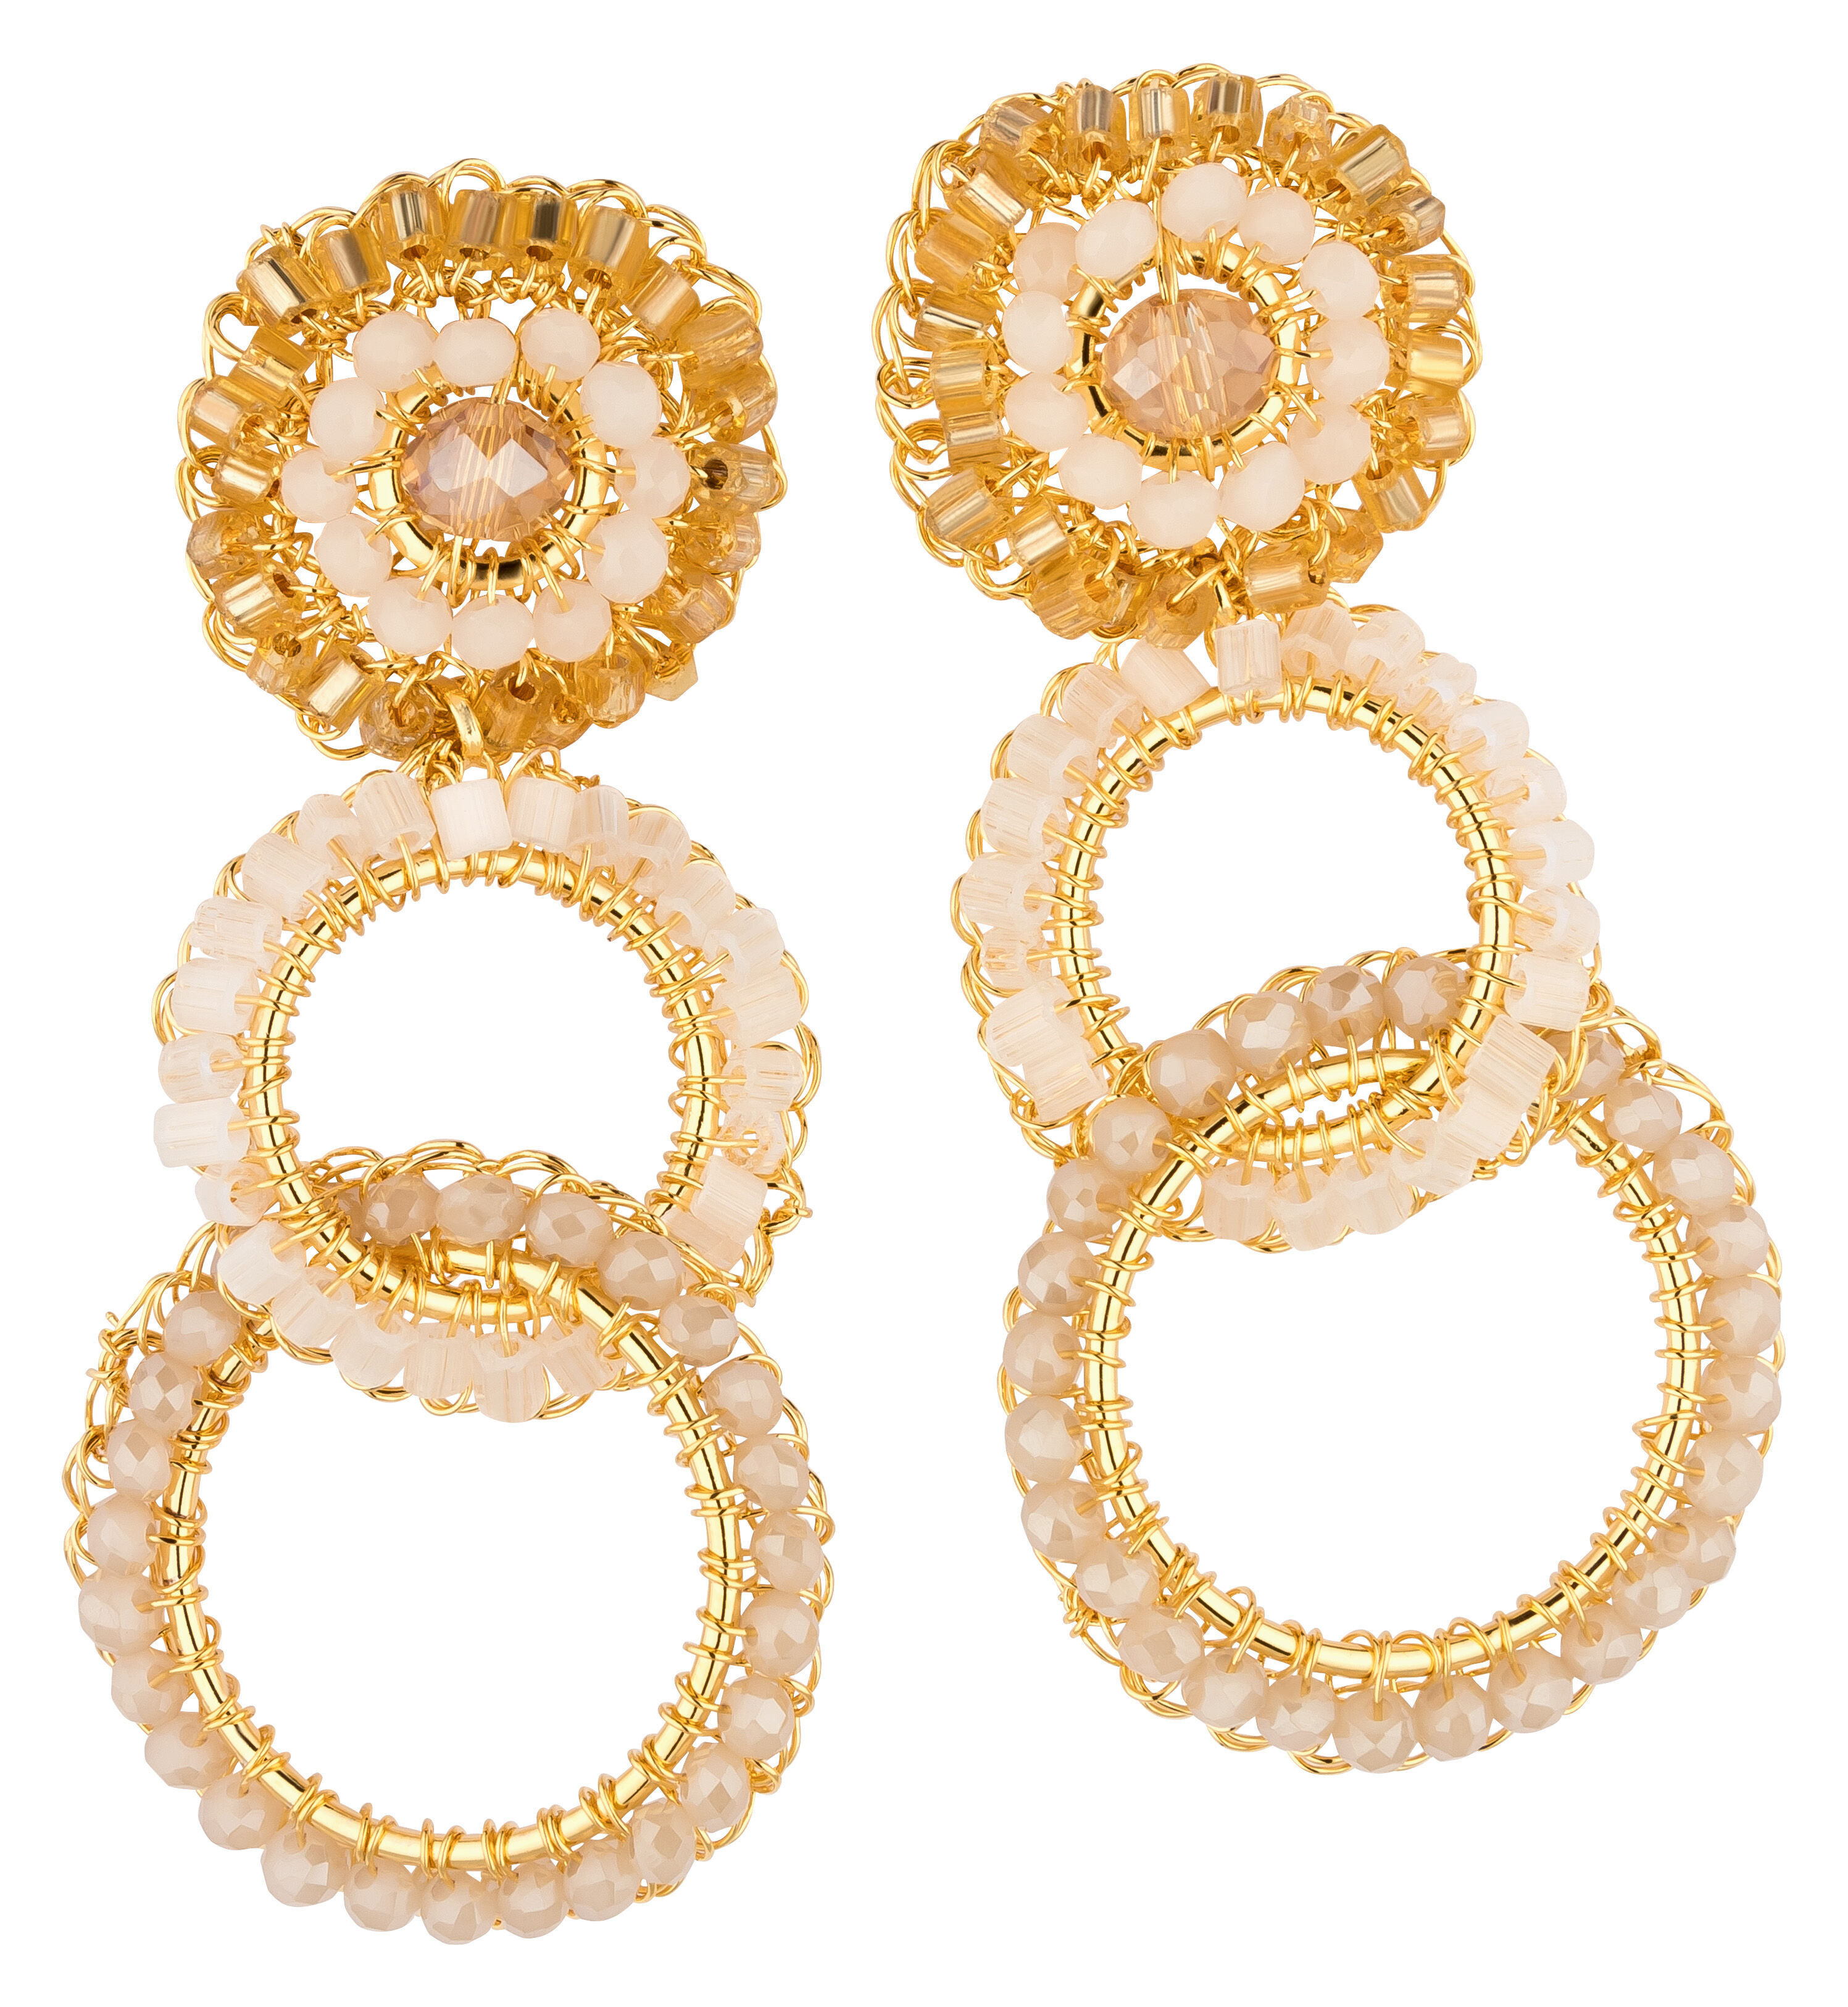 Schöne Ohrringe mit Perlen uín Nude und Gold